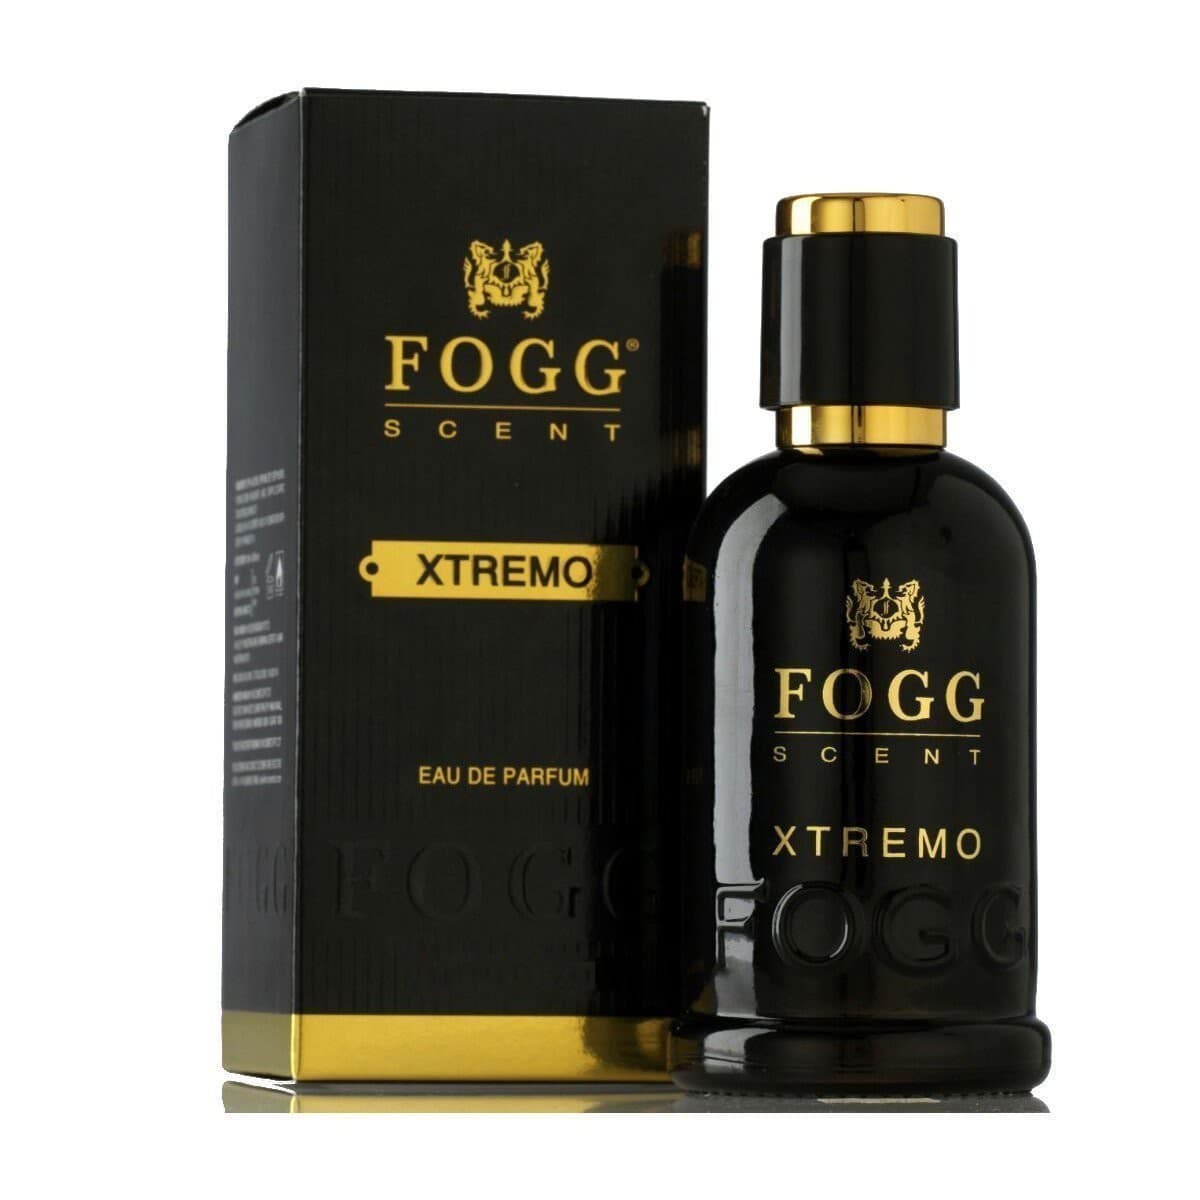 Fogg Scent Xtremo Men's Eau De Parfum.